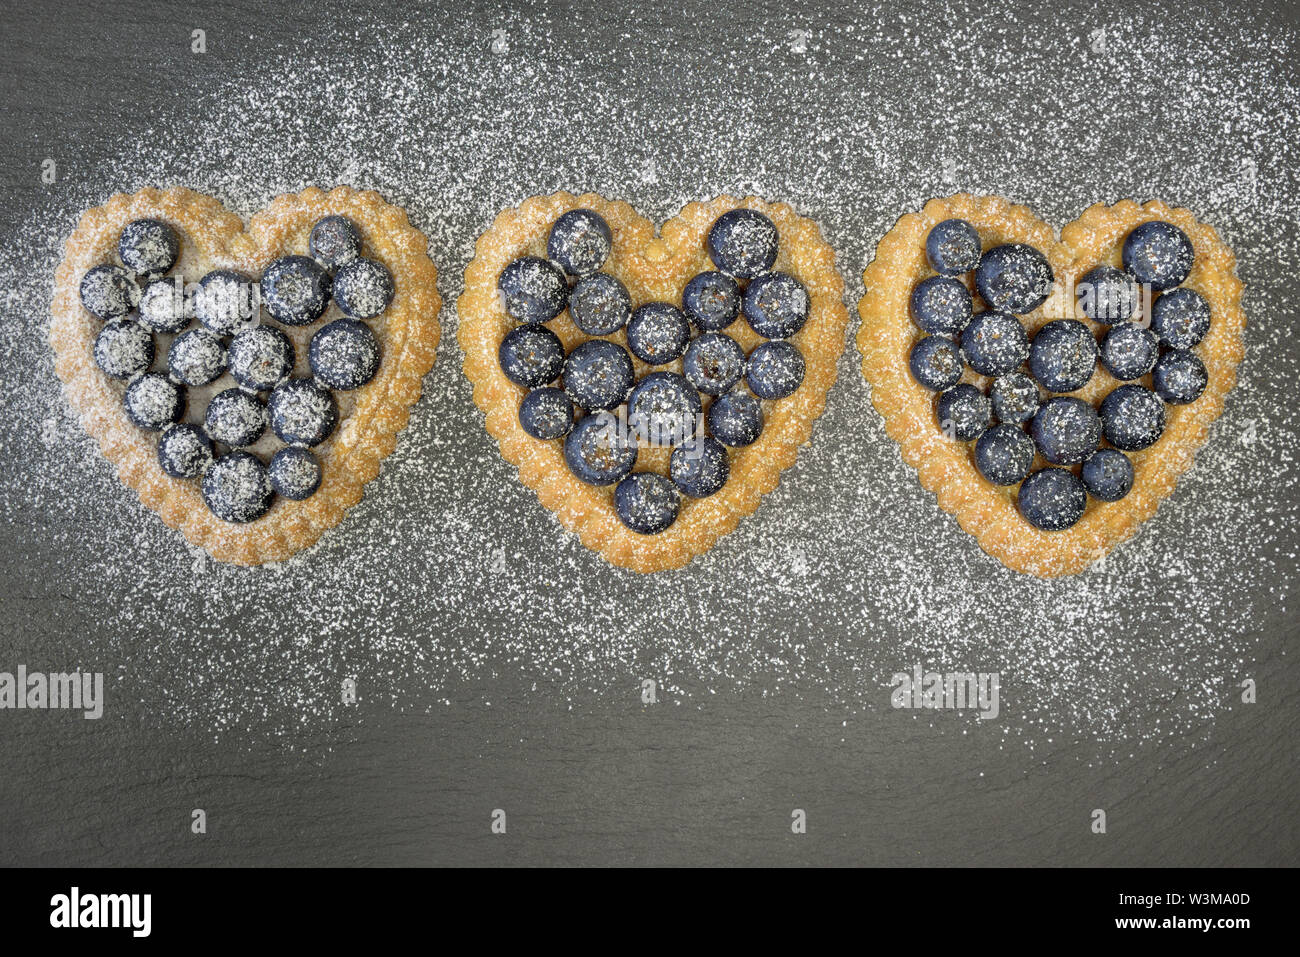 Trois petit gâteau en forme de coeur avec des bleuets se situent sur une plaque en ardoise noire et sont saupoudrés de sucre en poudre Banque D'Images